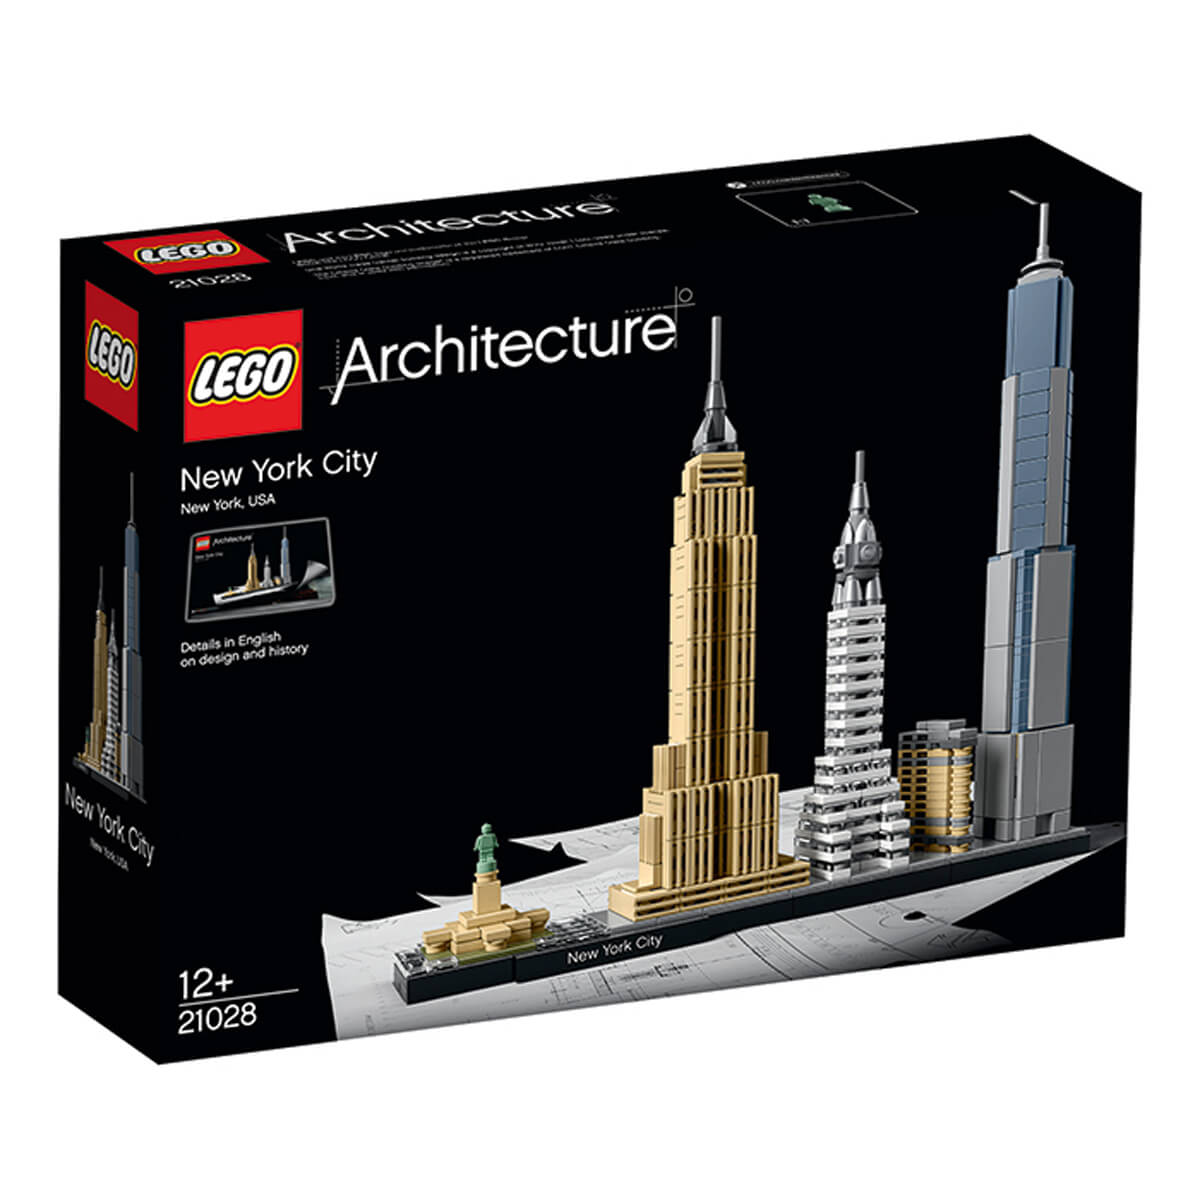 ΠΑΙΔΙ | Παιχνίδια | LEGO | CREATOR EXPERT & ART 21028 New York City